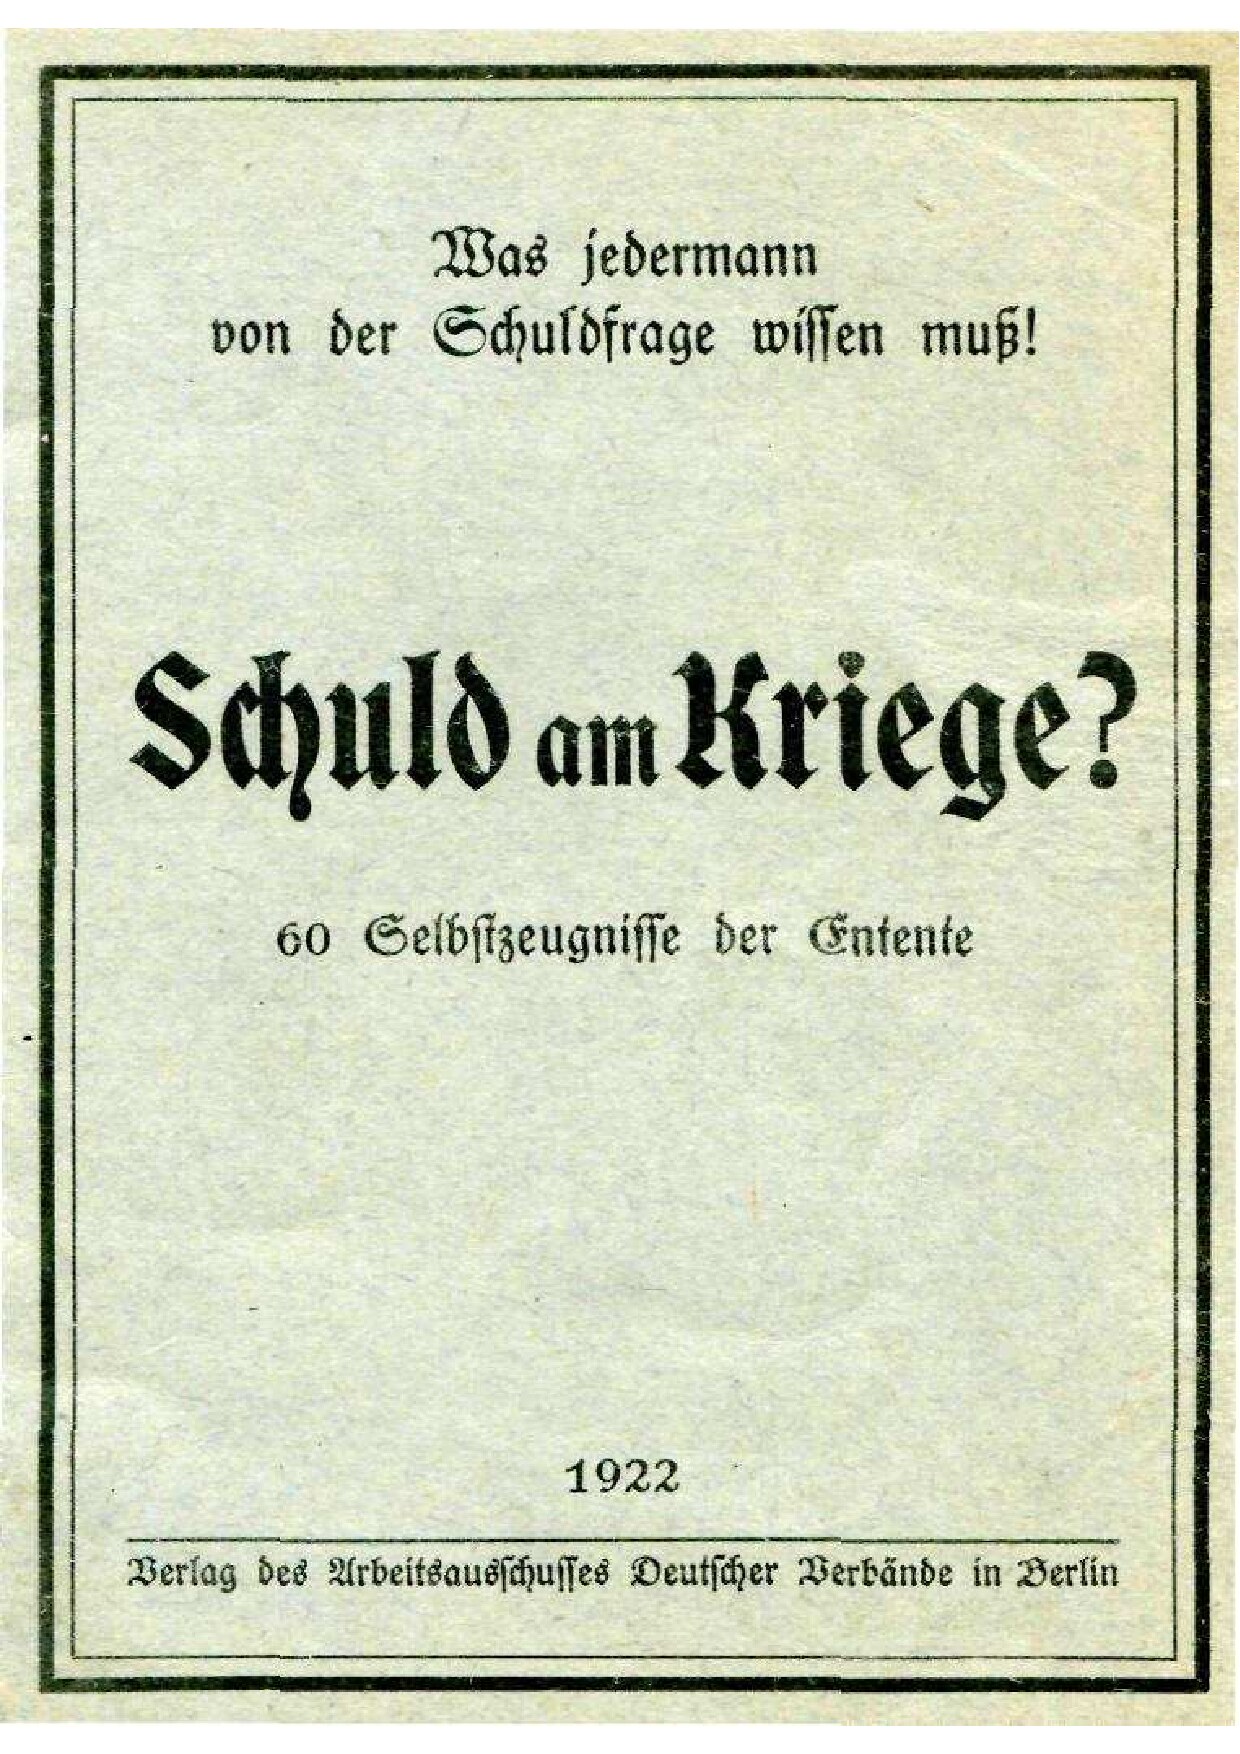 Schuld am Kriege - 60 Selbstzeugnisse der Entente (1922, 36 S., Scan, Fraktur)